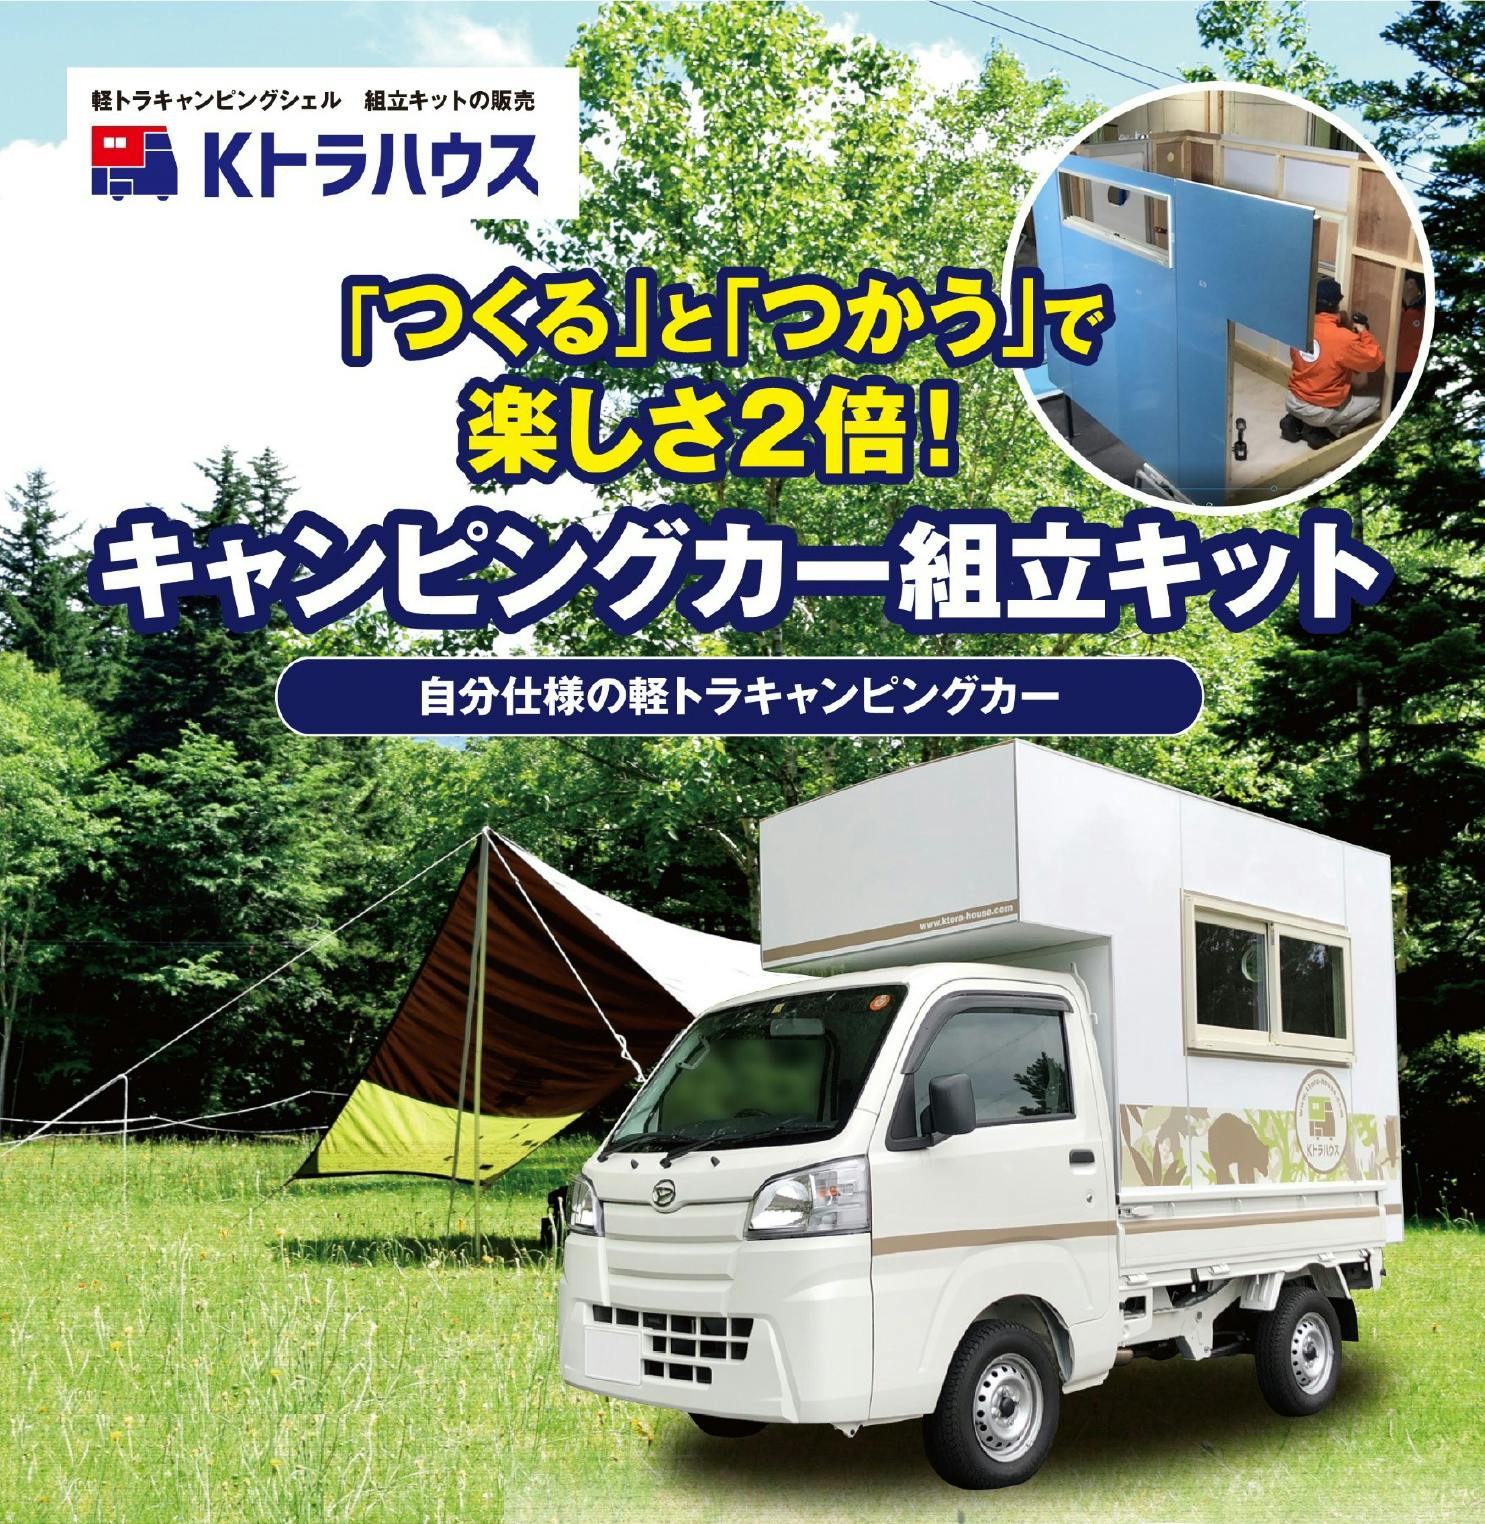 日本初 自分で作る軽トラキャンピングカー Kトラハウス 組立キット令和バージョン Campfire キャンプファイヤー